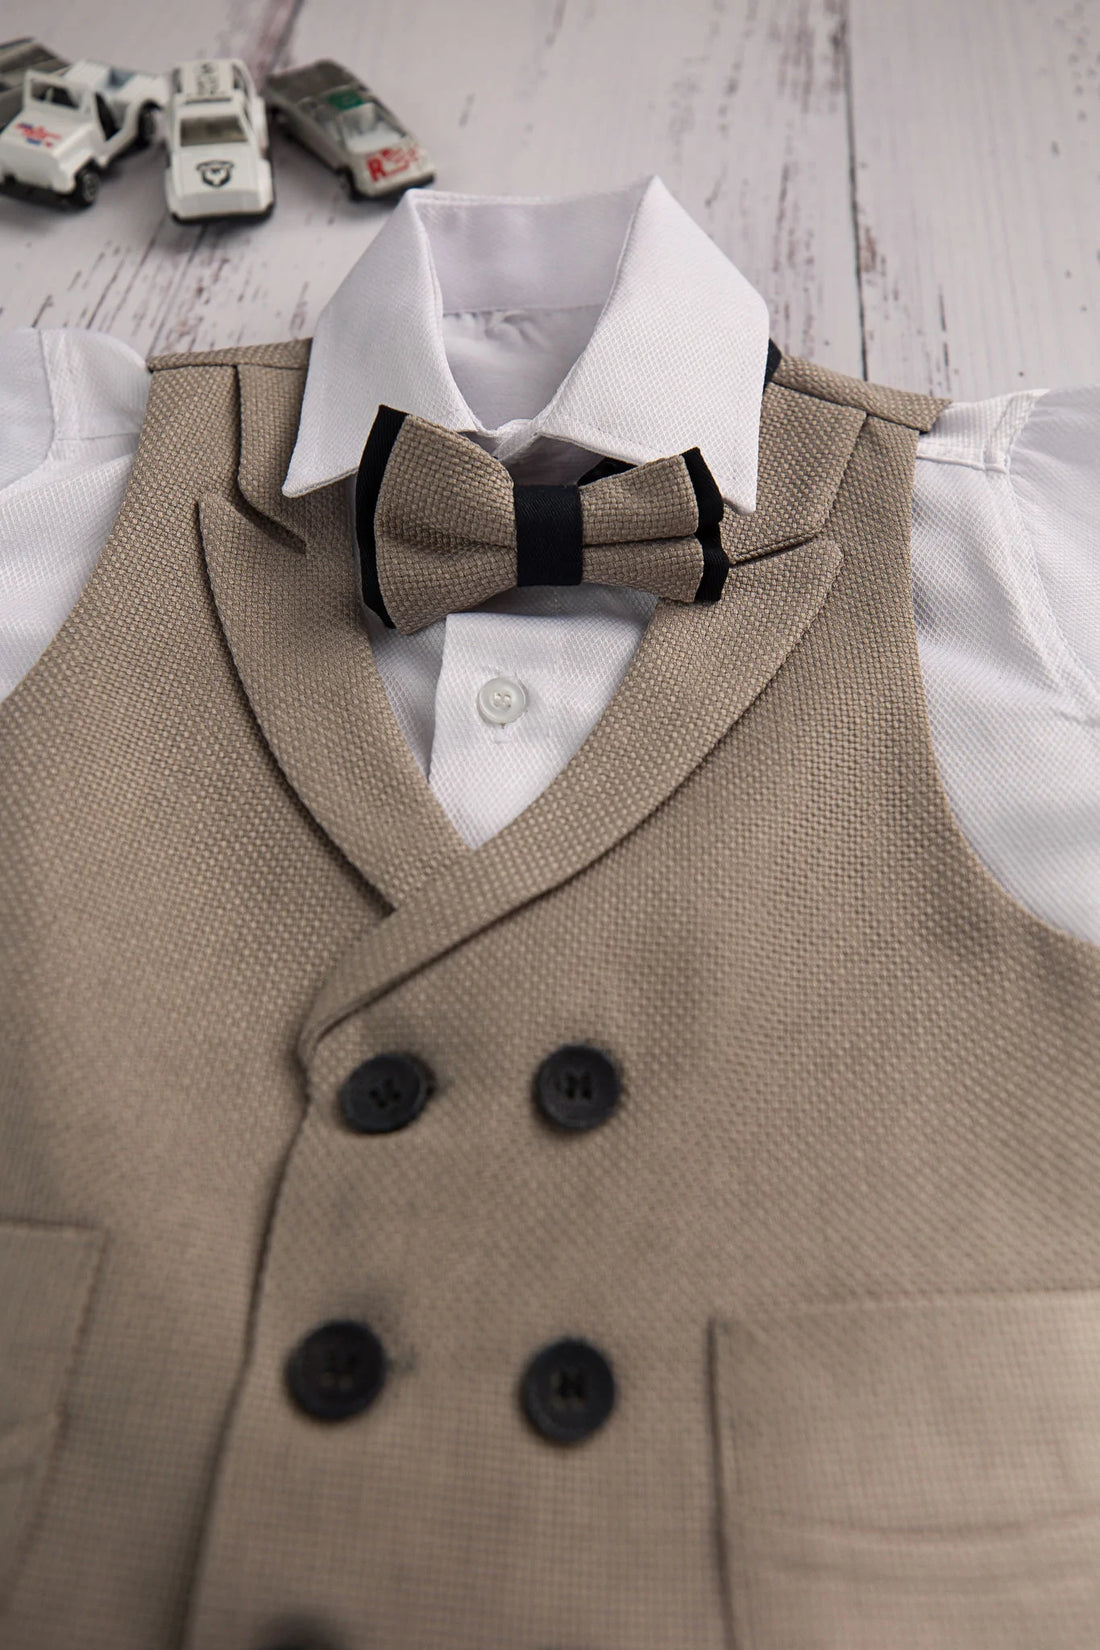 Waistcoat, Shirt and Bow Tie